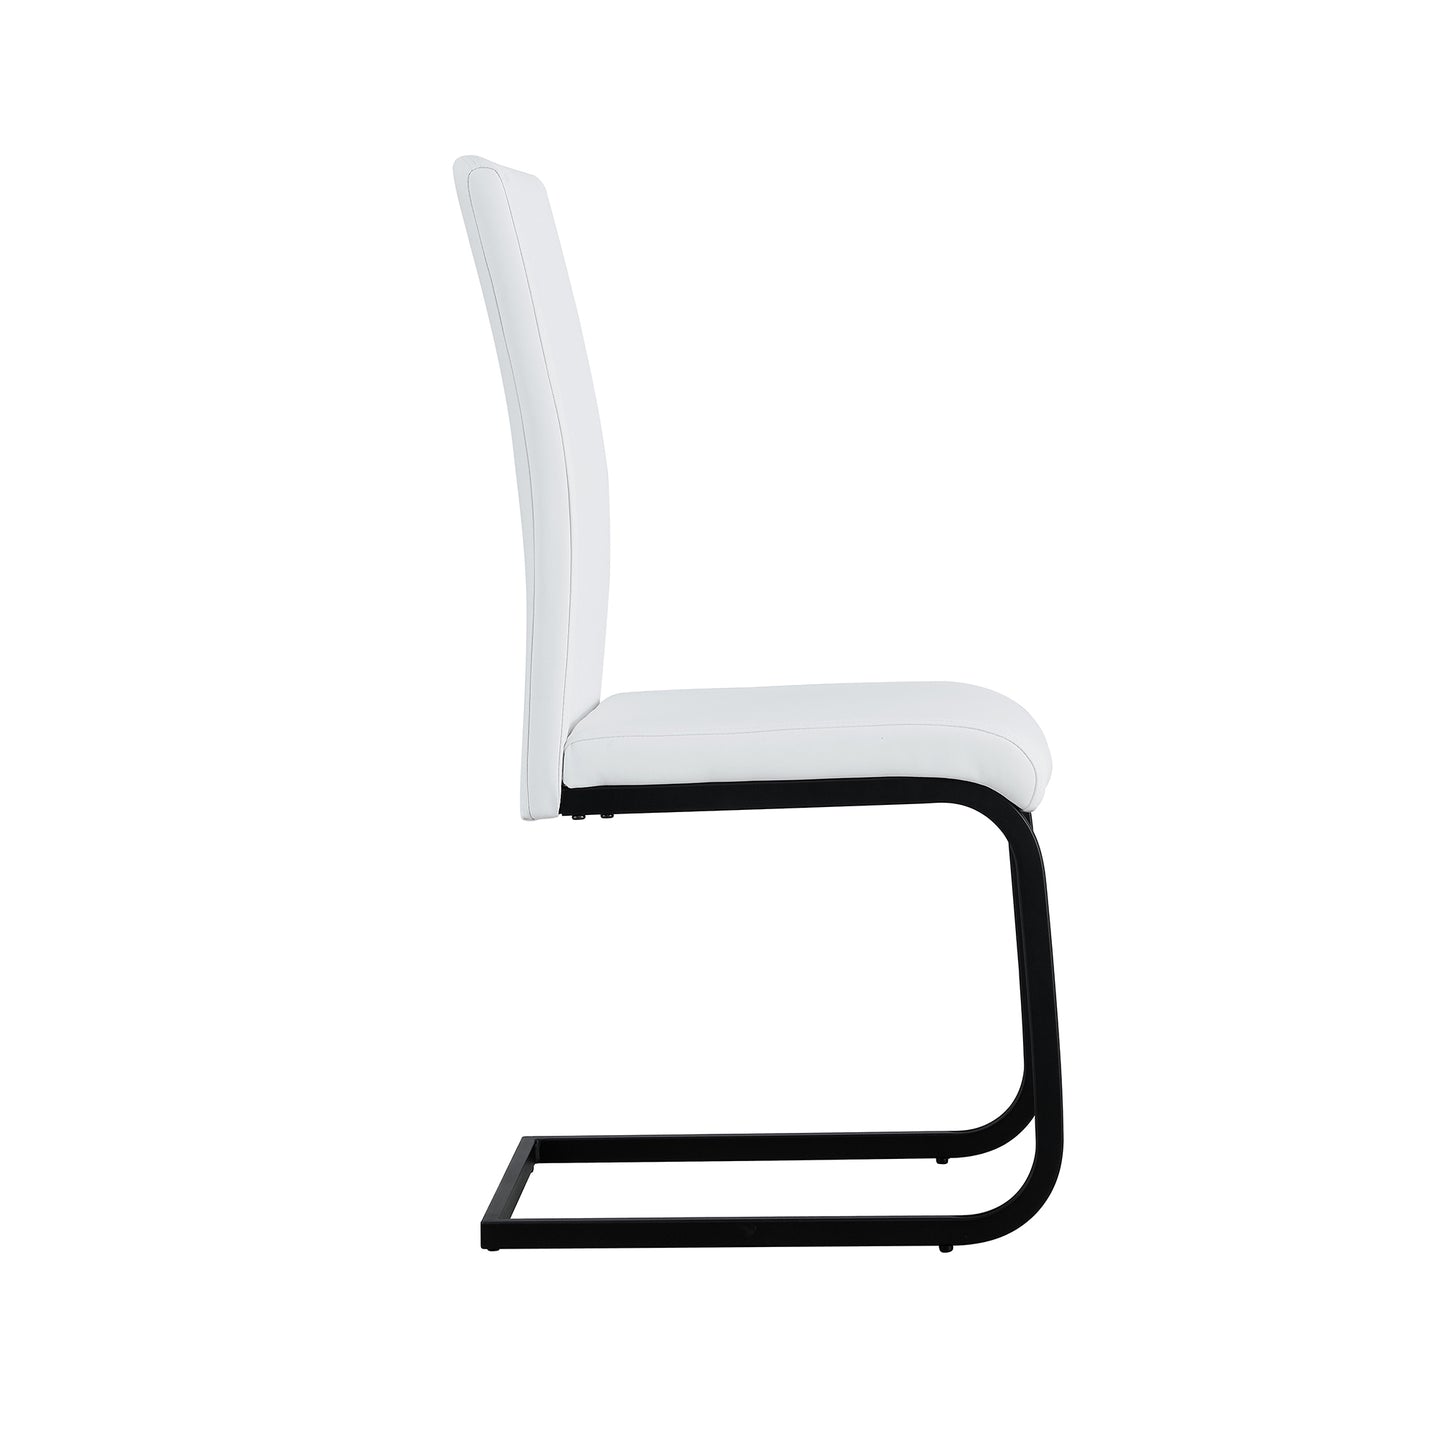 White PU Modern Chairs